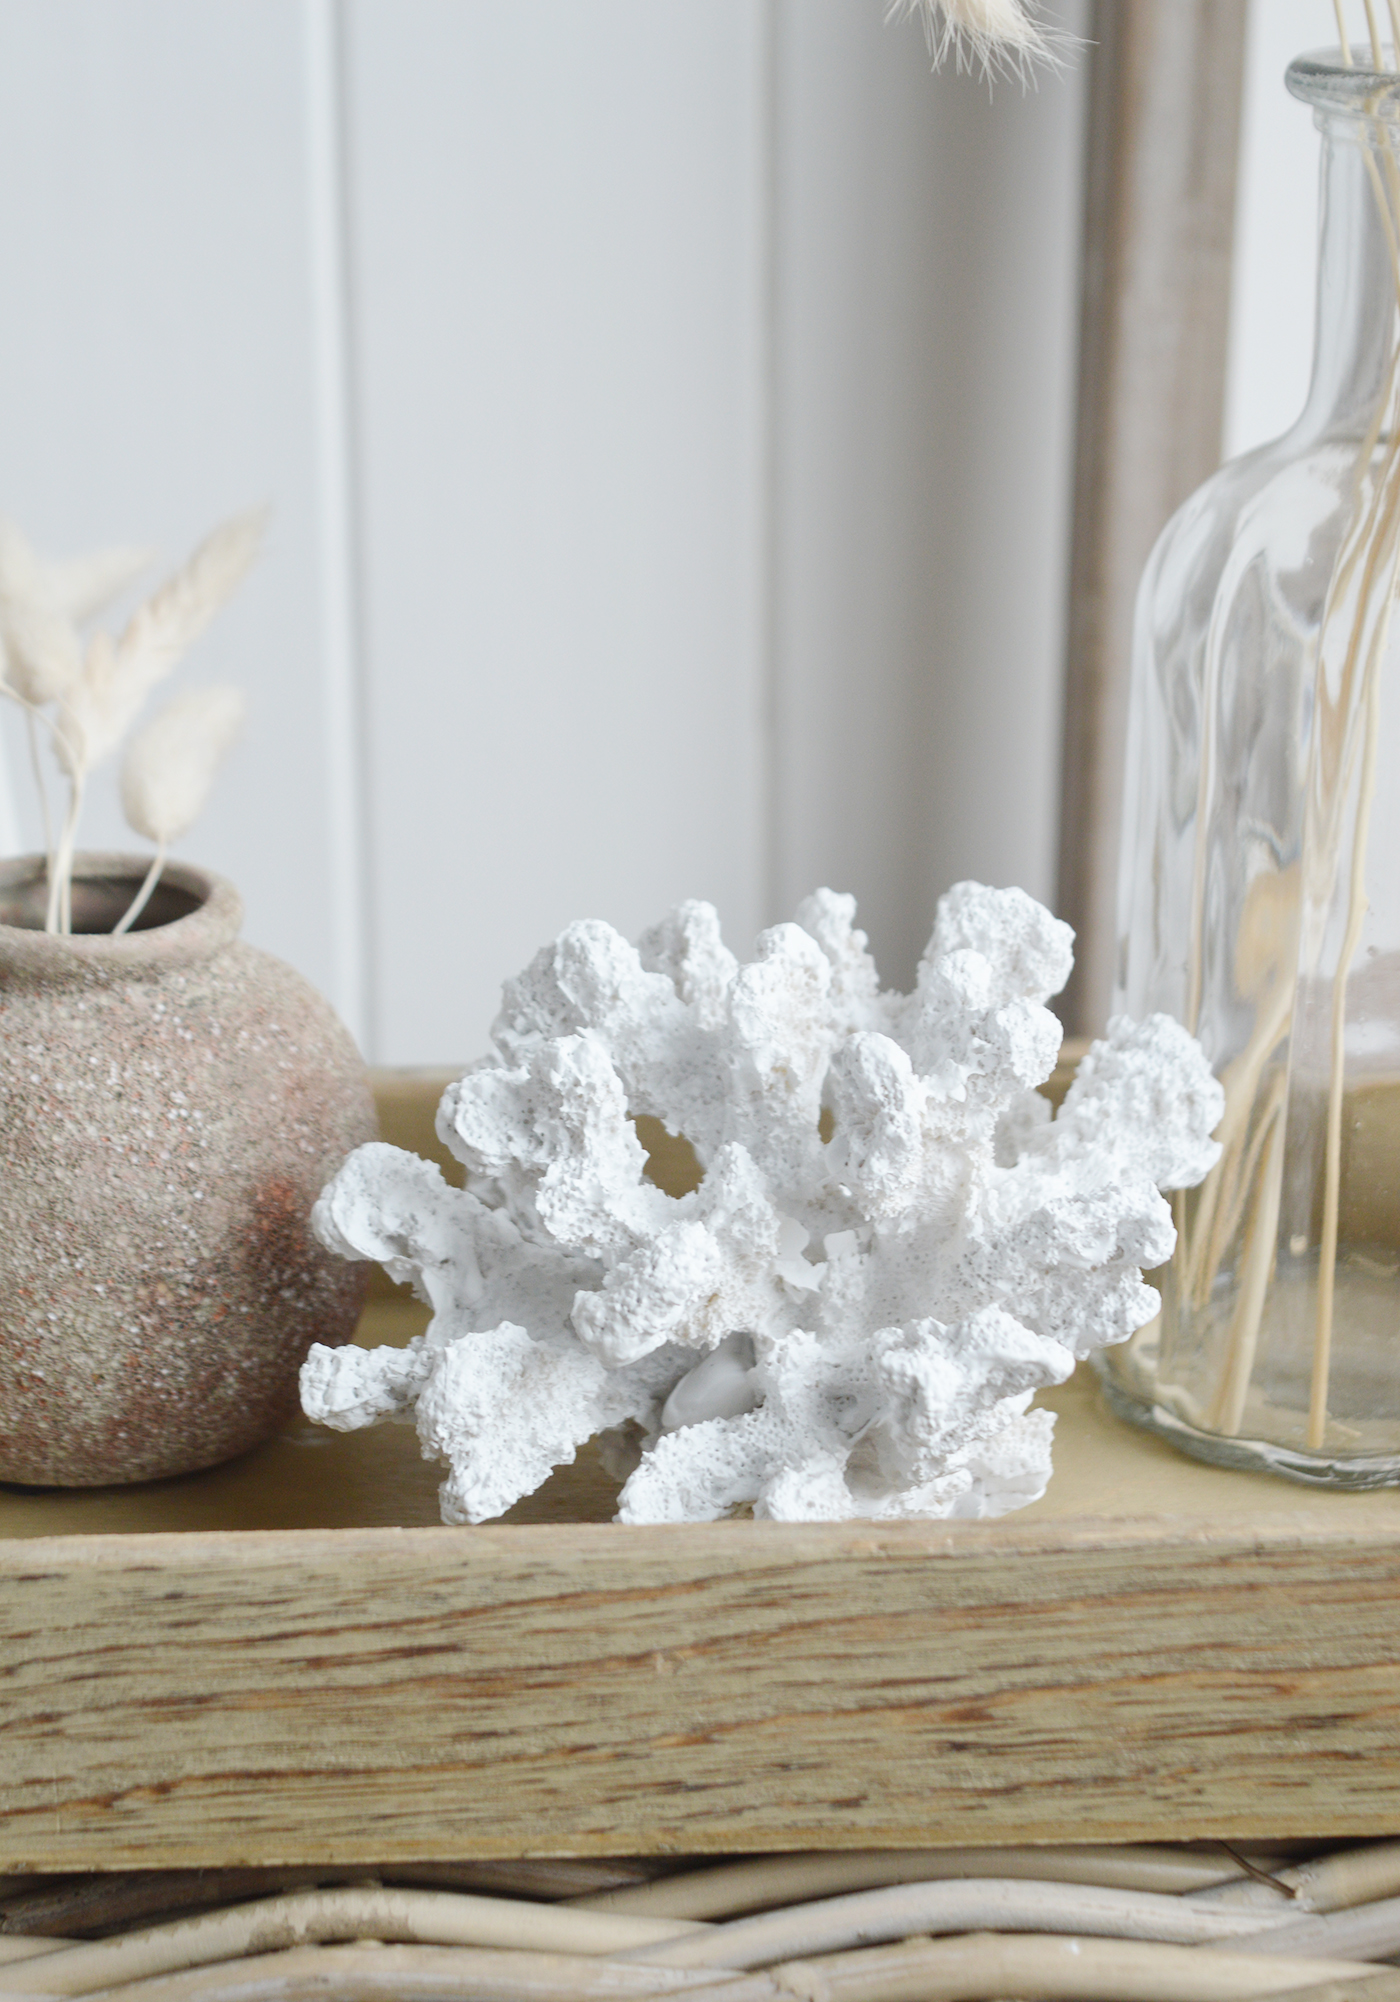 Off-White Coral Sculpture - Set of 2 - Scenario Home